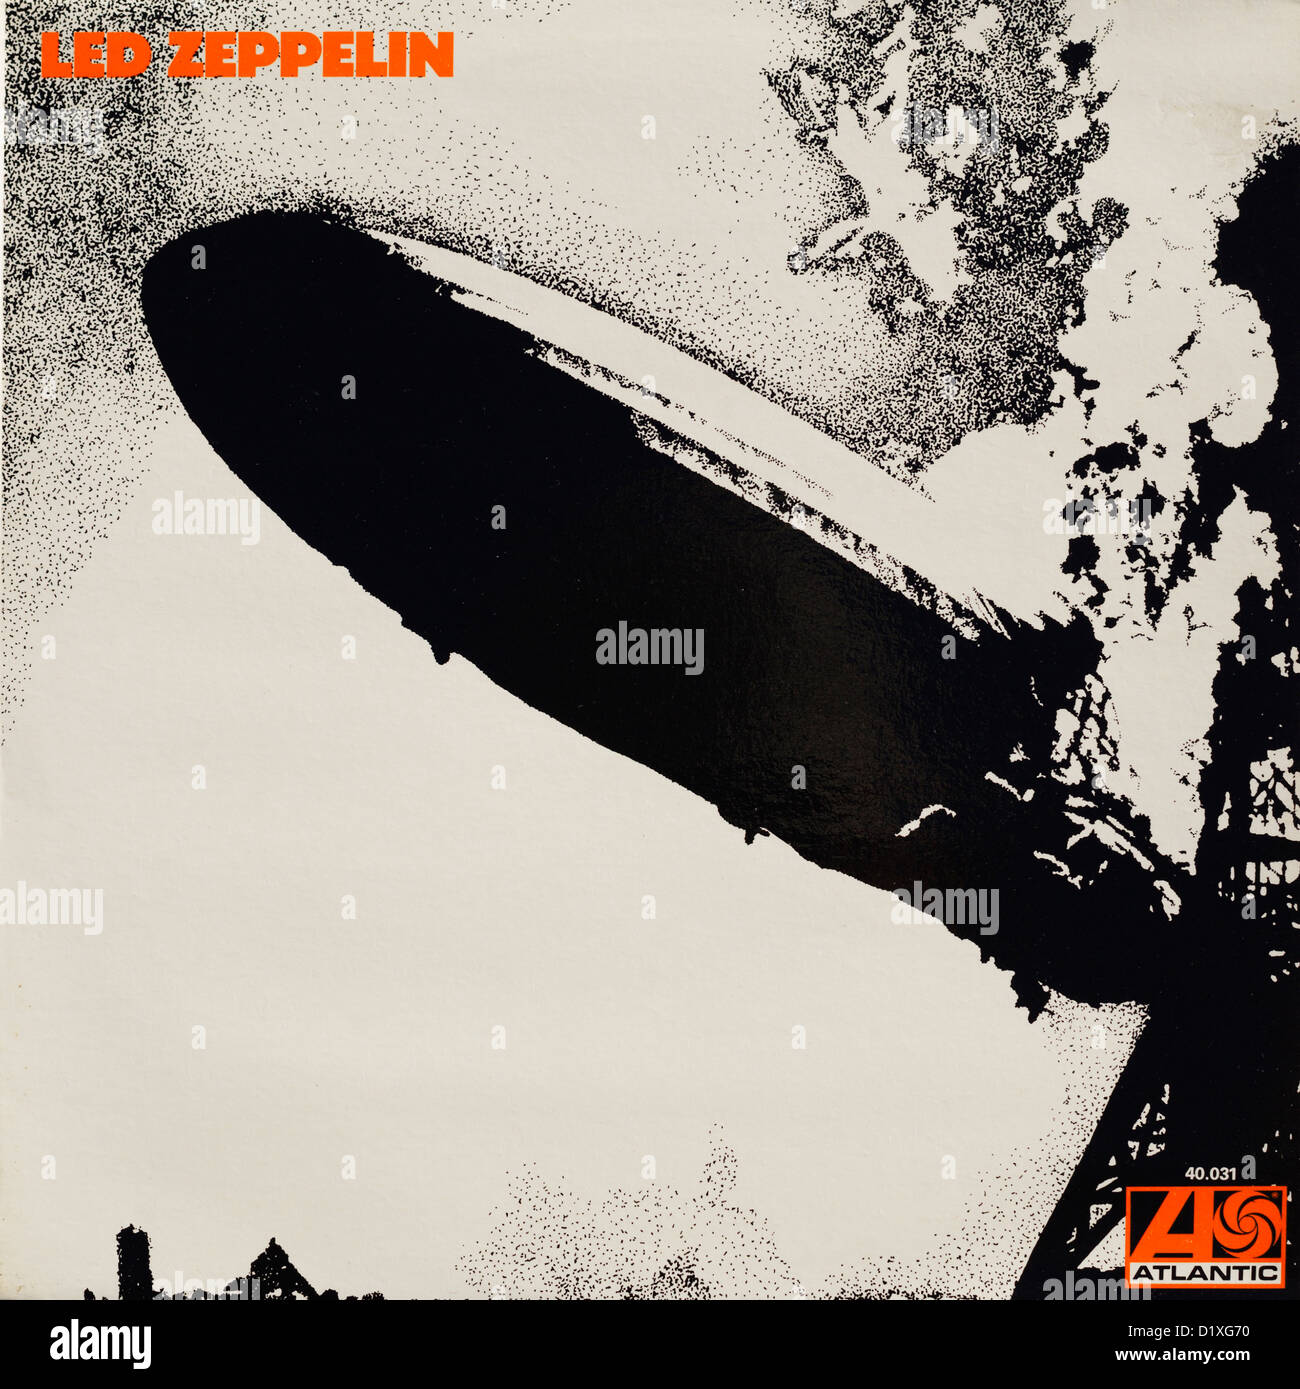 Zeppelin-Debüt-Rekord Album-Cover auf Atlantic Records führte.  Nur zur redaktionellen Verwendung. Stockfoto